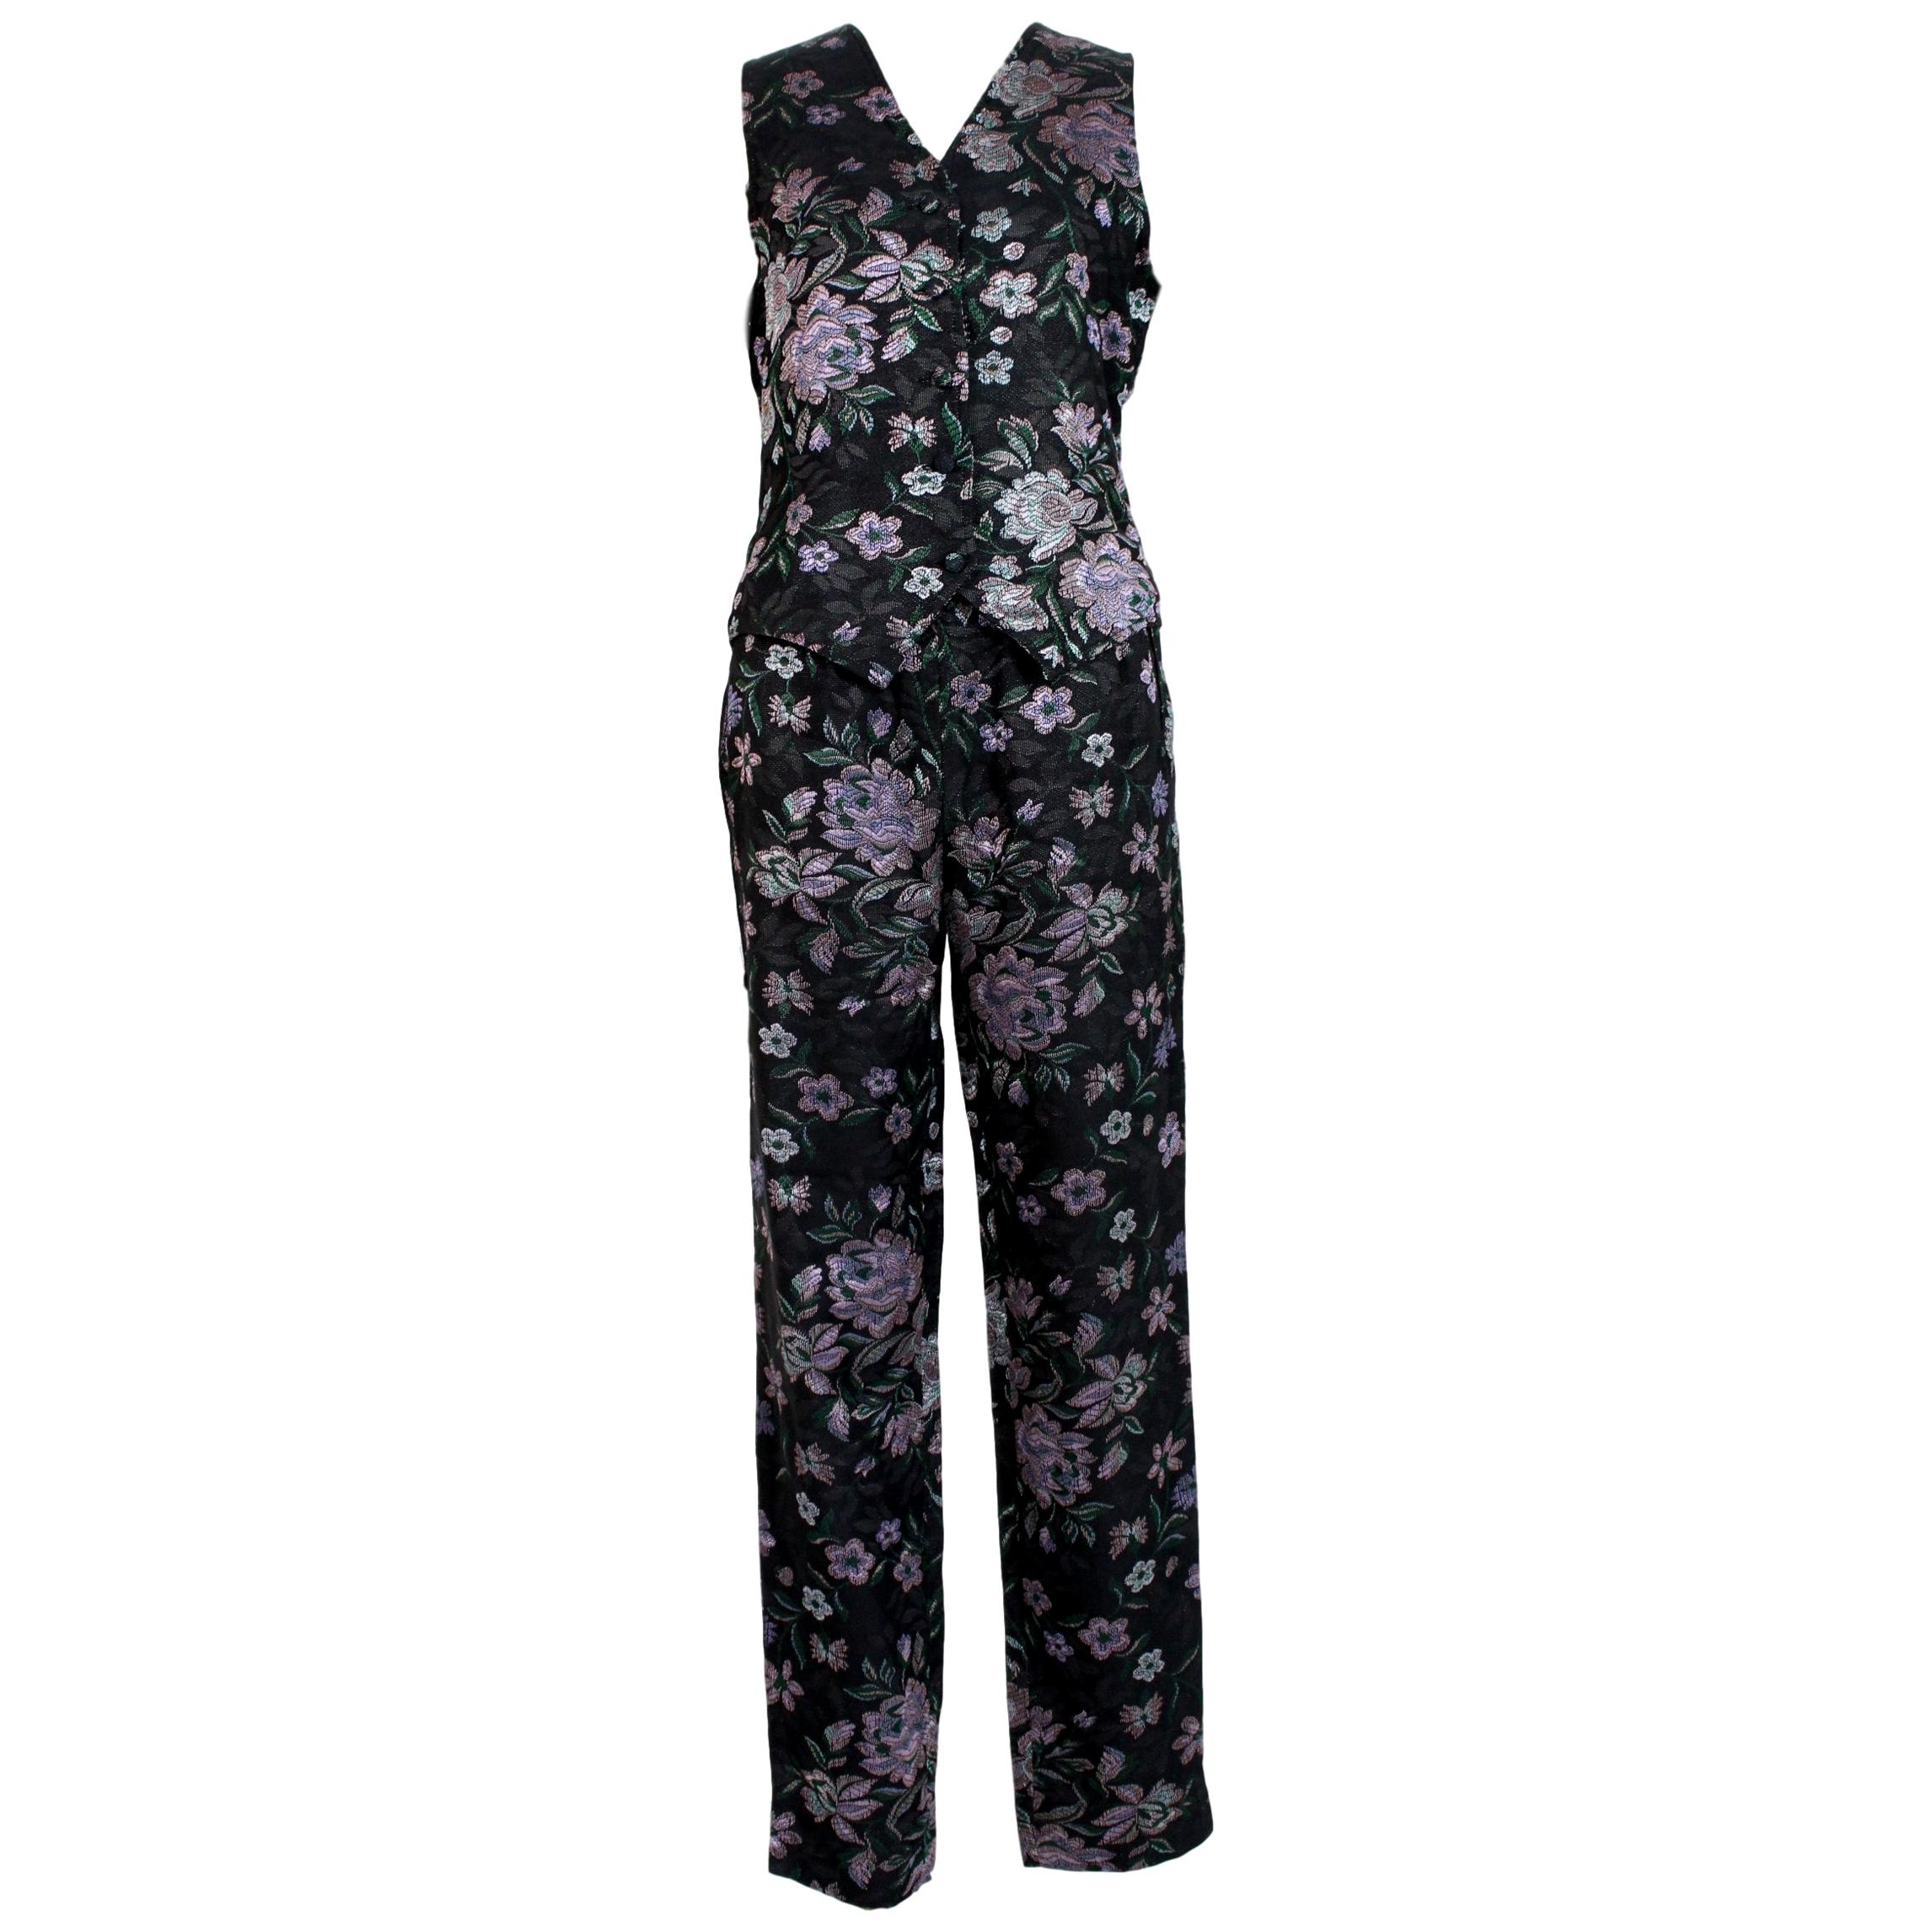 Emporio Armani Black Pink Cotton Damask Floral Pants Suit